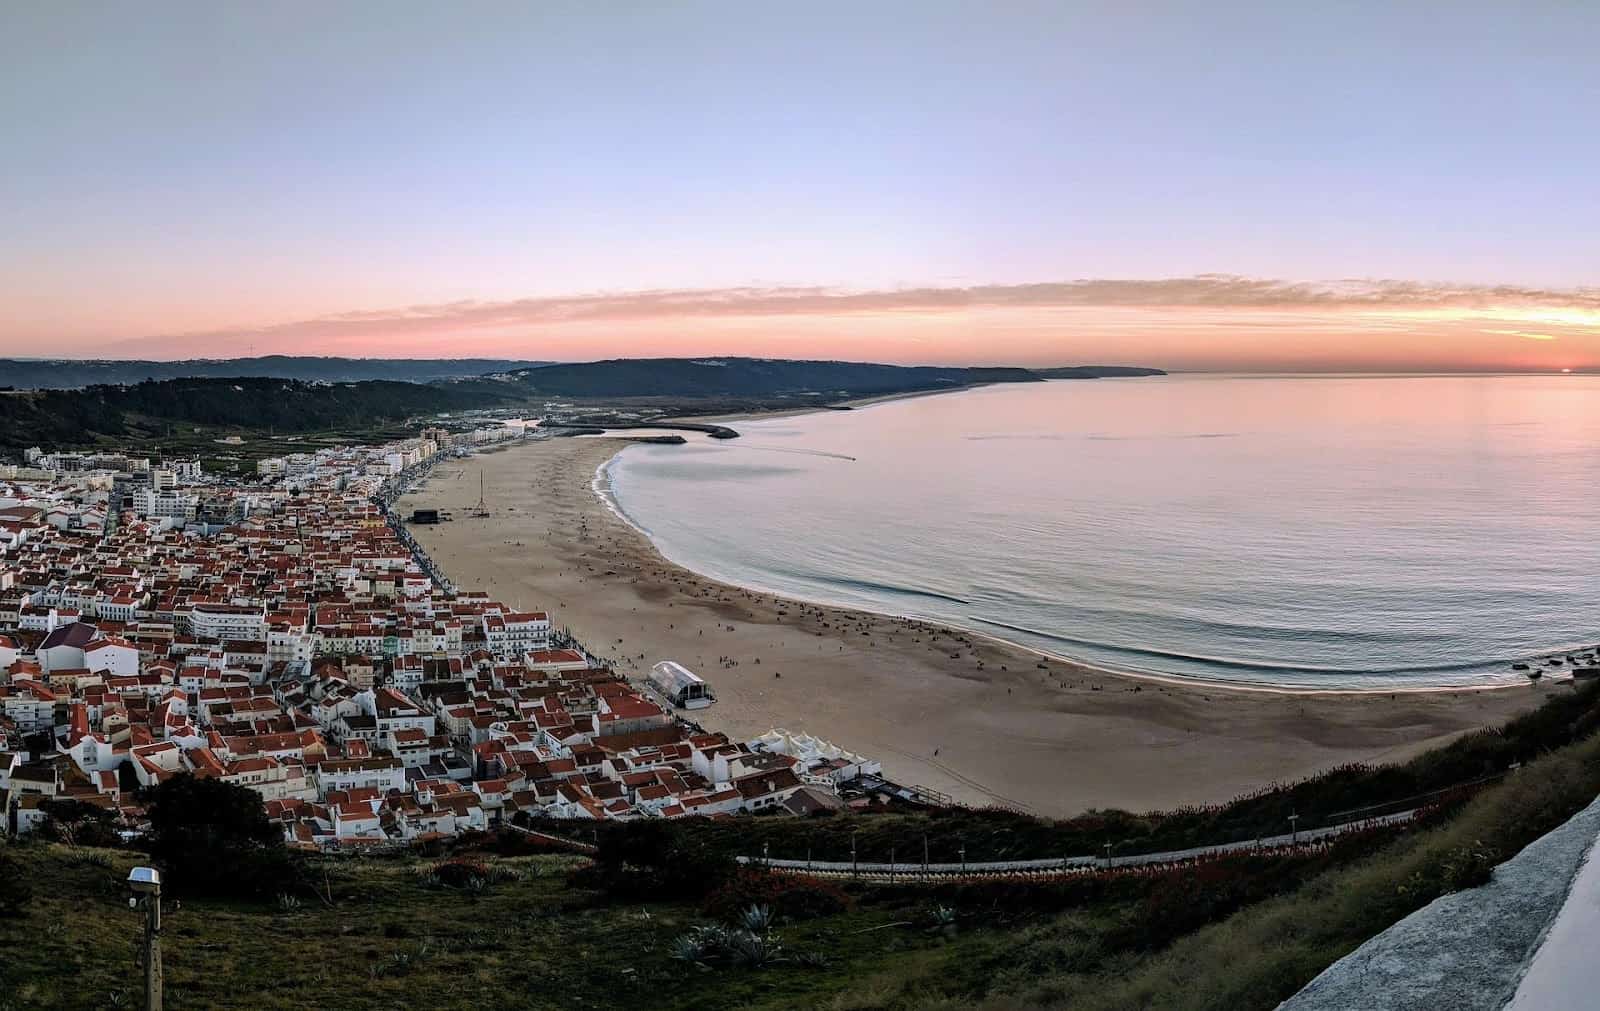 Portugal's Silver Coast